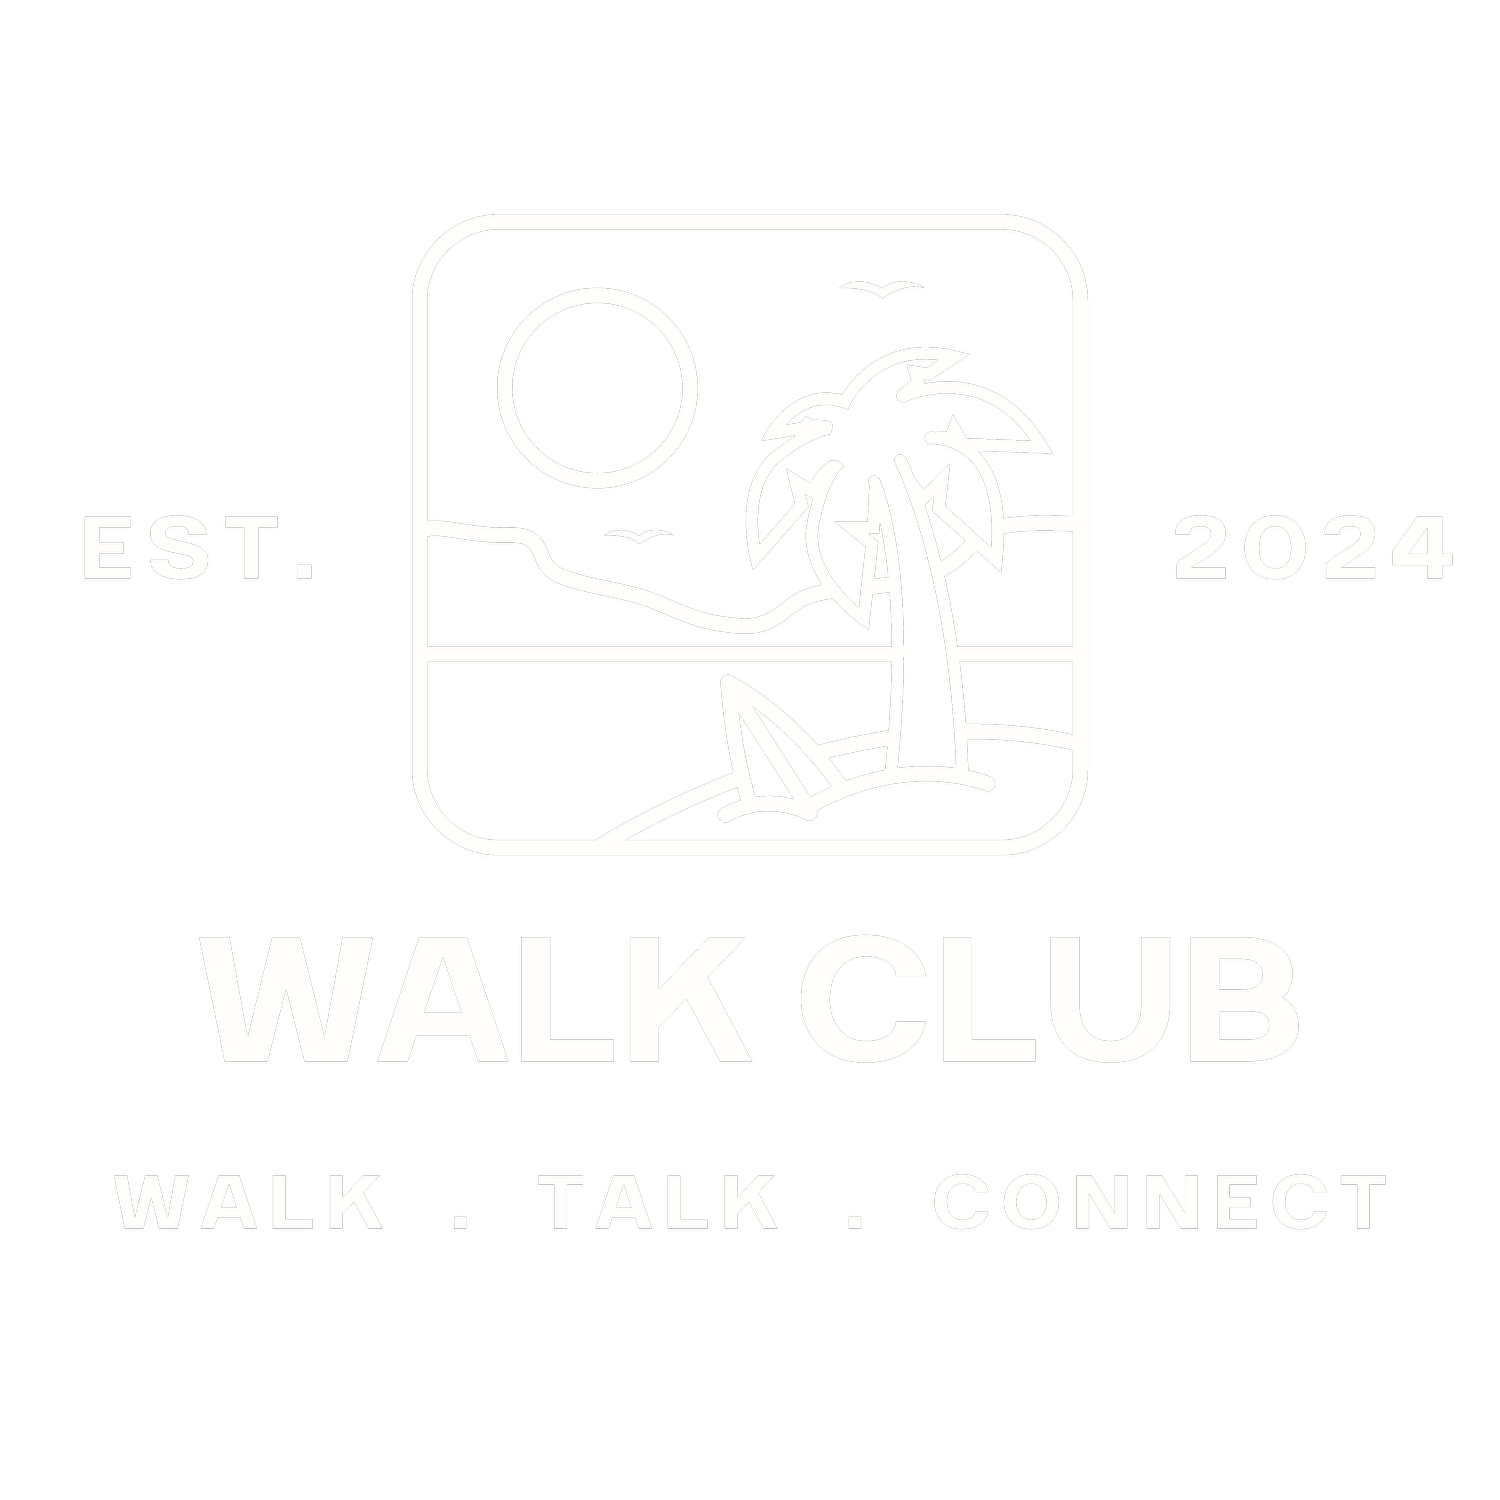 WALK CLUB